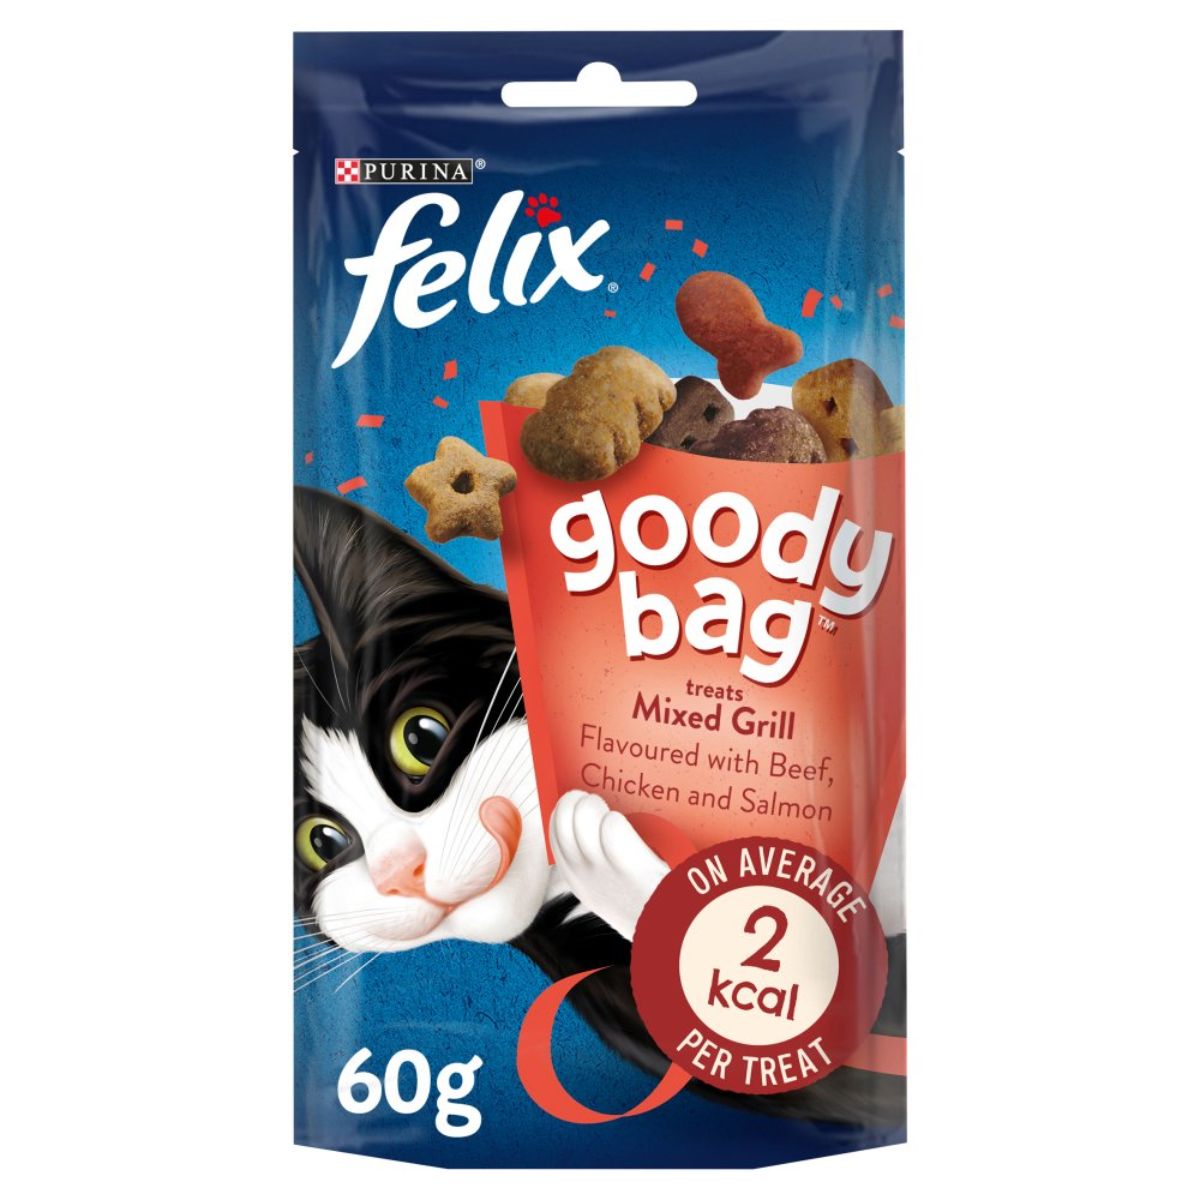 Purina - Felix Goody Bag Mixed Grill Treats - 60g cat treats.